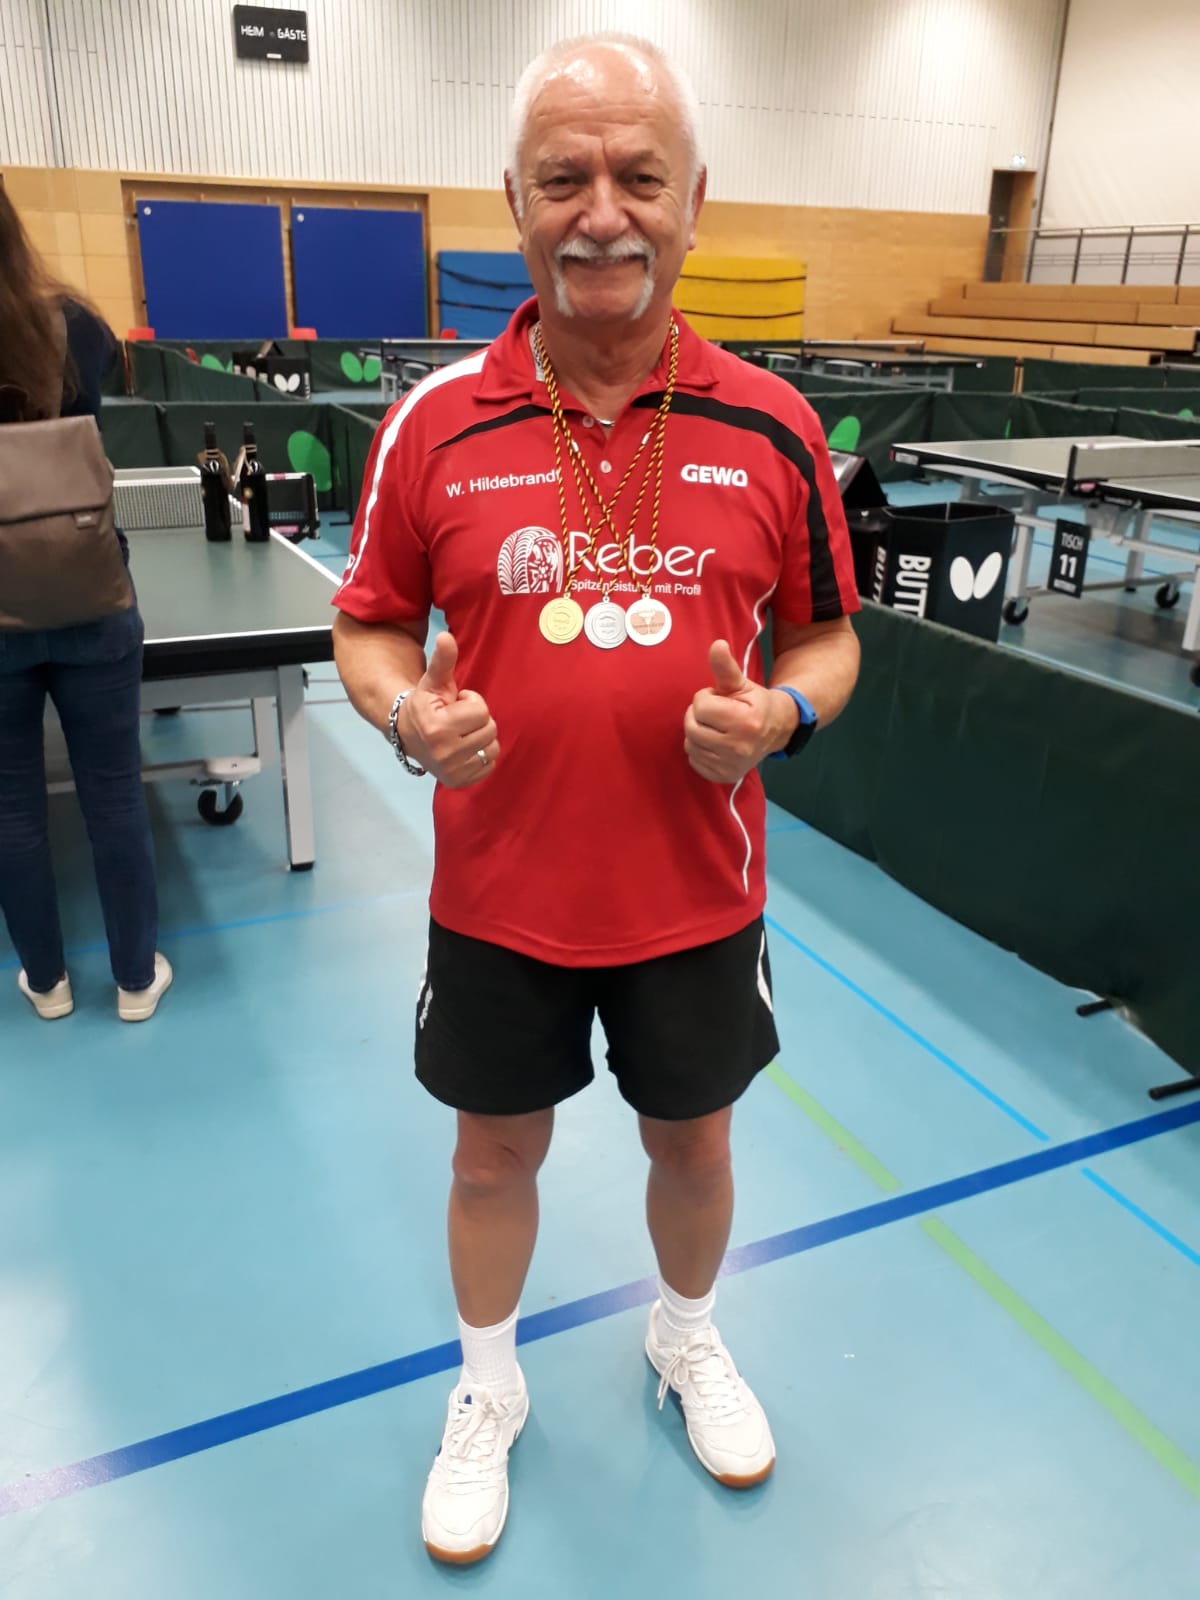 Wilfried "Brett" Hildebrandt sahnt bei den Baden-Württenbergischen Meisterschaften kräftig ab!